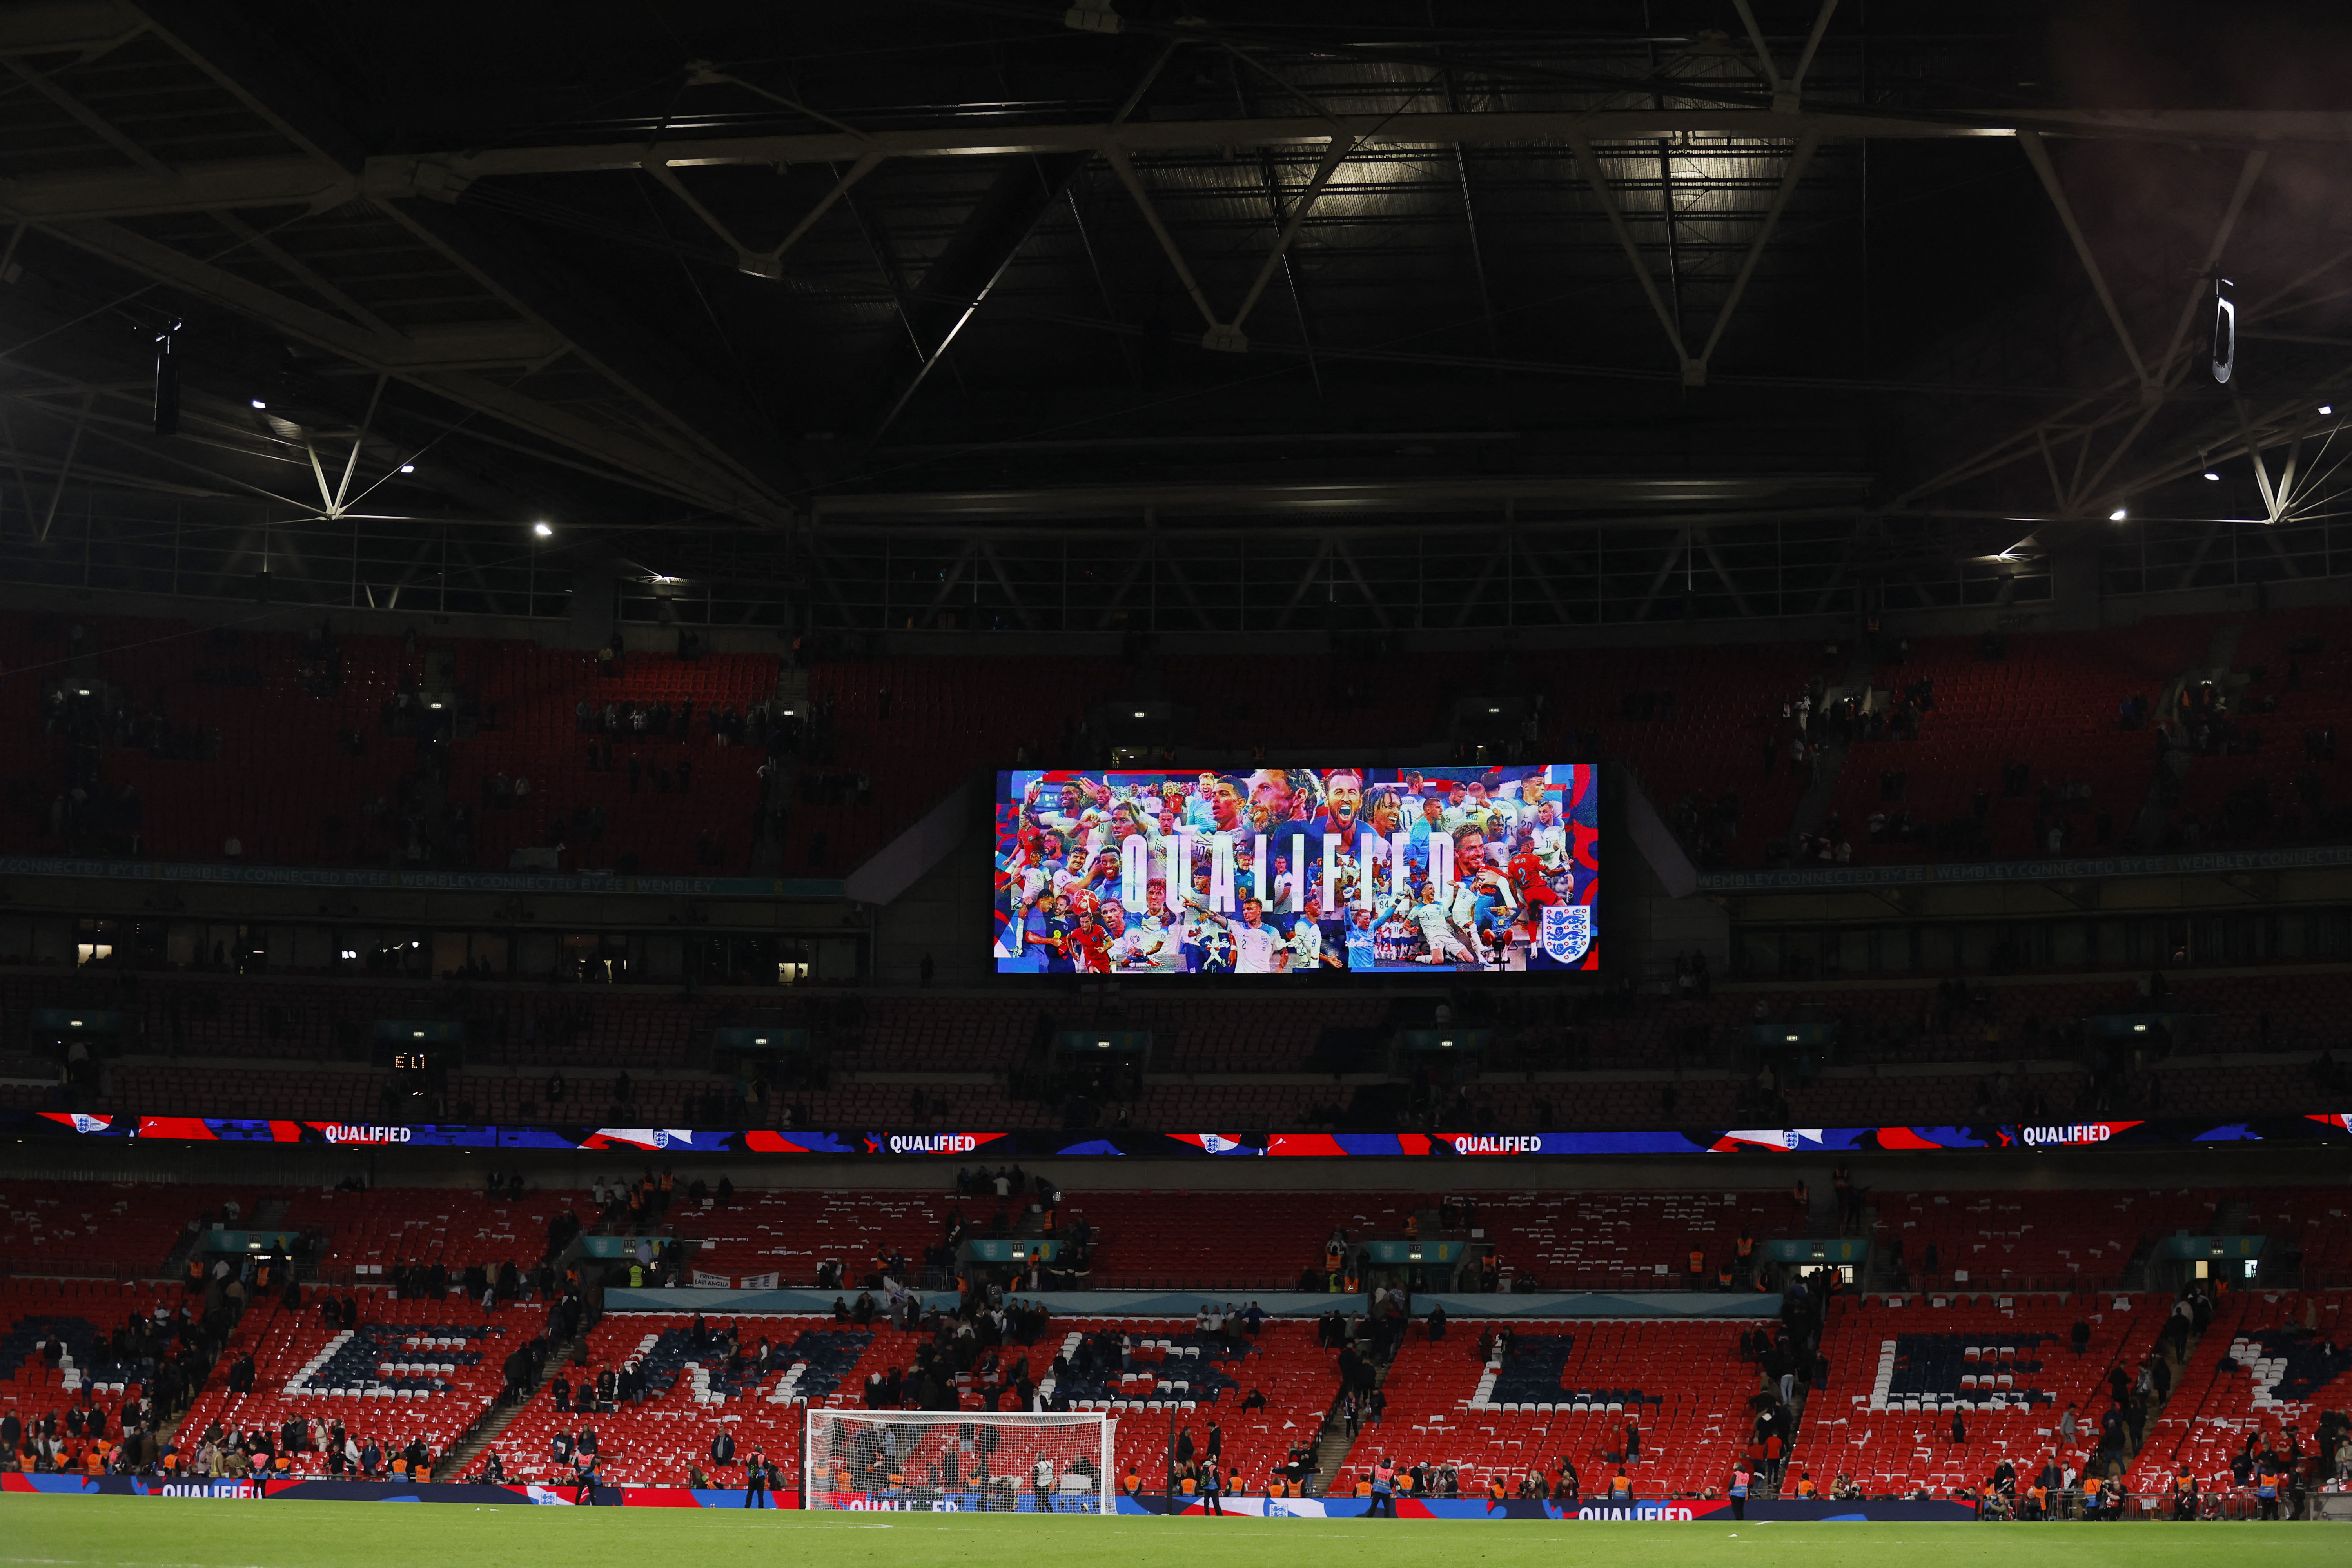 La Federcalcio inglese rivede l’illuminazione dell’arco di Wembley con i colori israeliani dopo le critiche